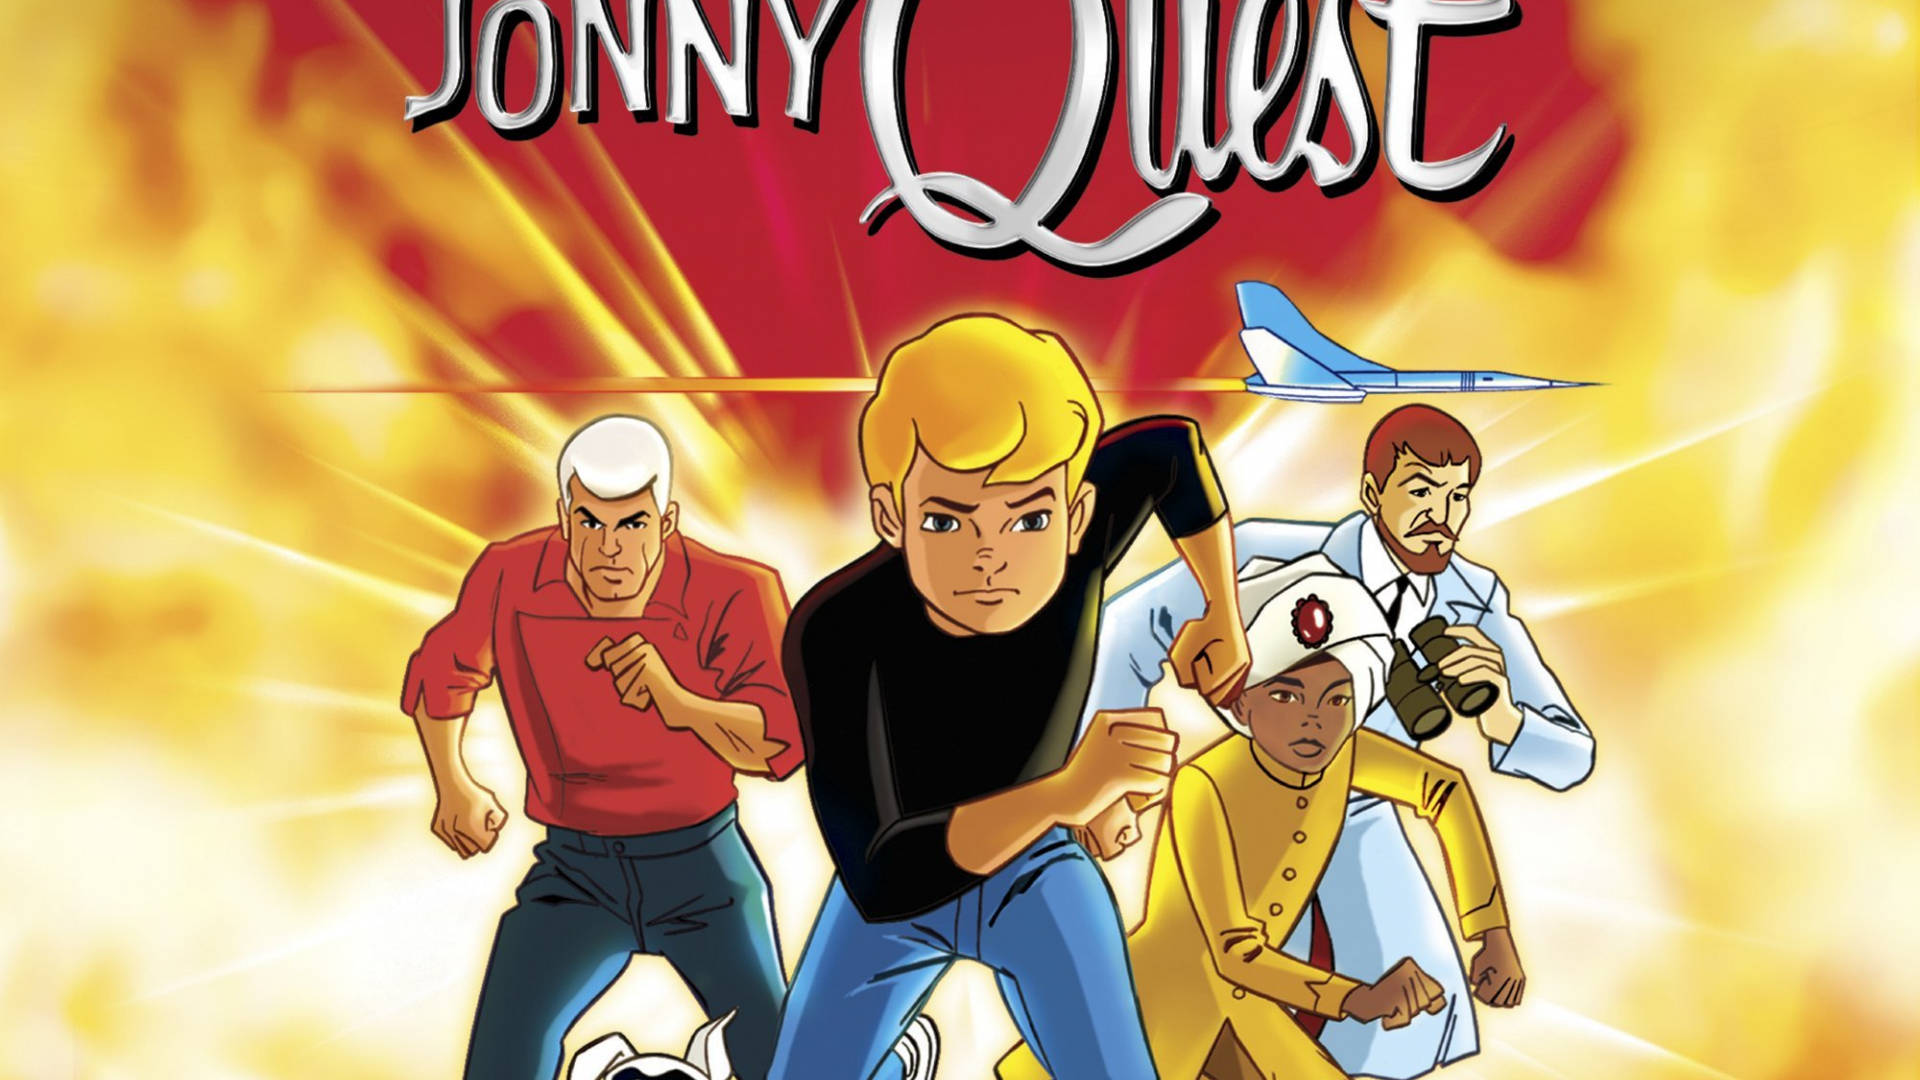 Jonny Quest Squad Poster Wallpaper